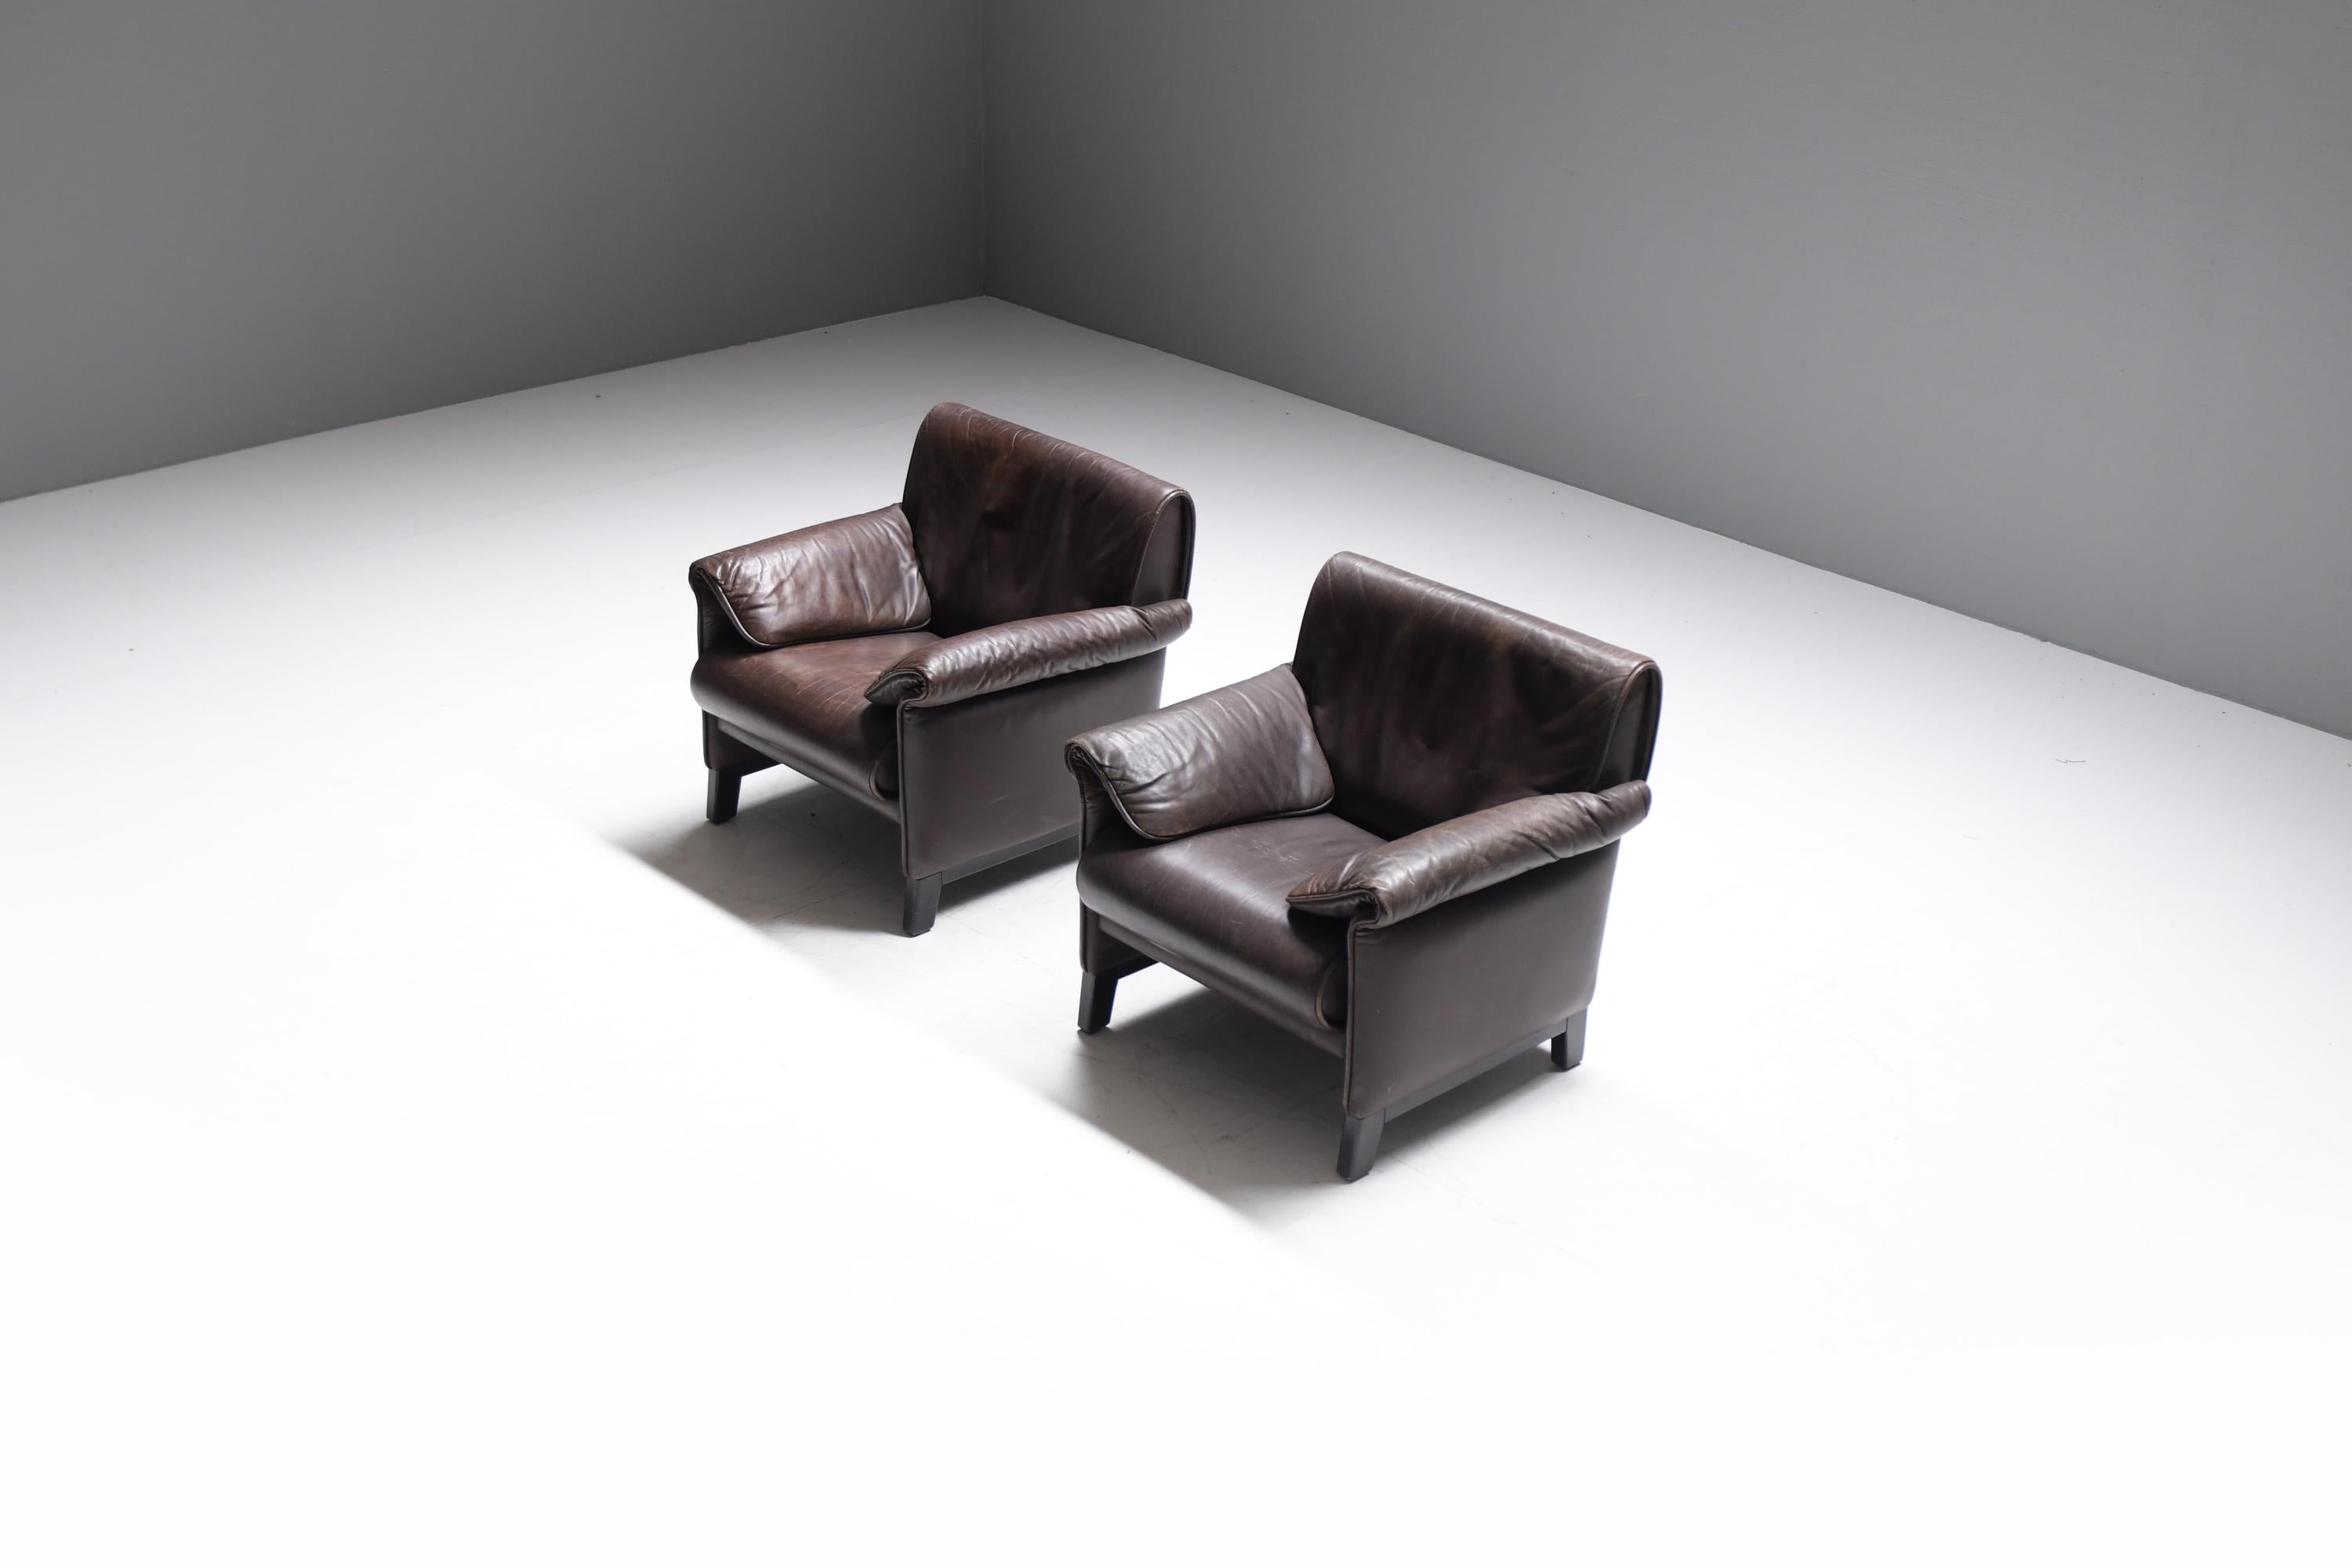 Elegantes Paar De Sede 'DS-14' Sessel in patiniertem dunkelbraunem Leder und mit schwarz lackiertem Holzgestell.
Er wurde 1989 vom Team De Sede entworfen und zwischen 1989 und 1997 hergestellt. 

Mit einer faszinierenden Geschichte von sechzig